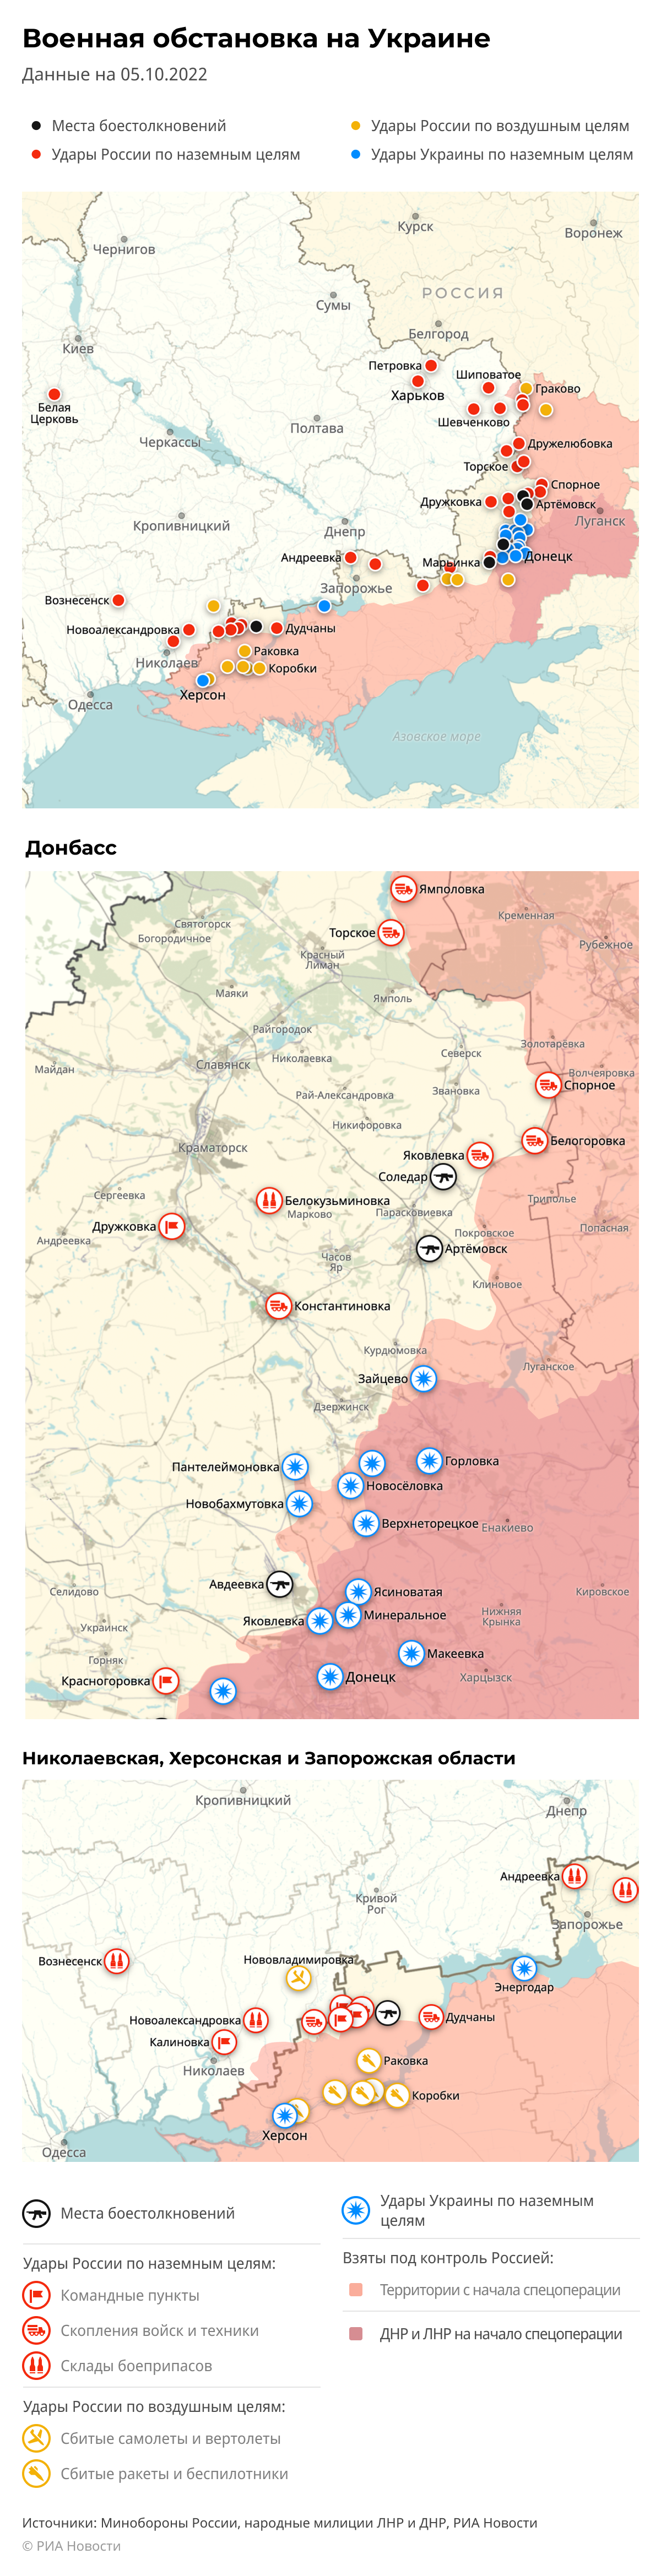 Карта спецоперации Вооруженных сил России на Украине на 05.10.2022